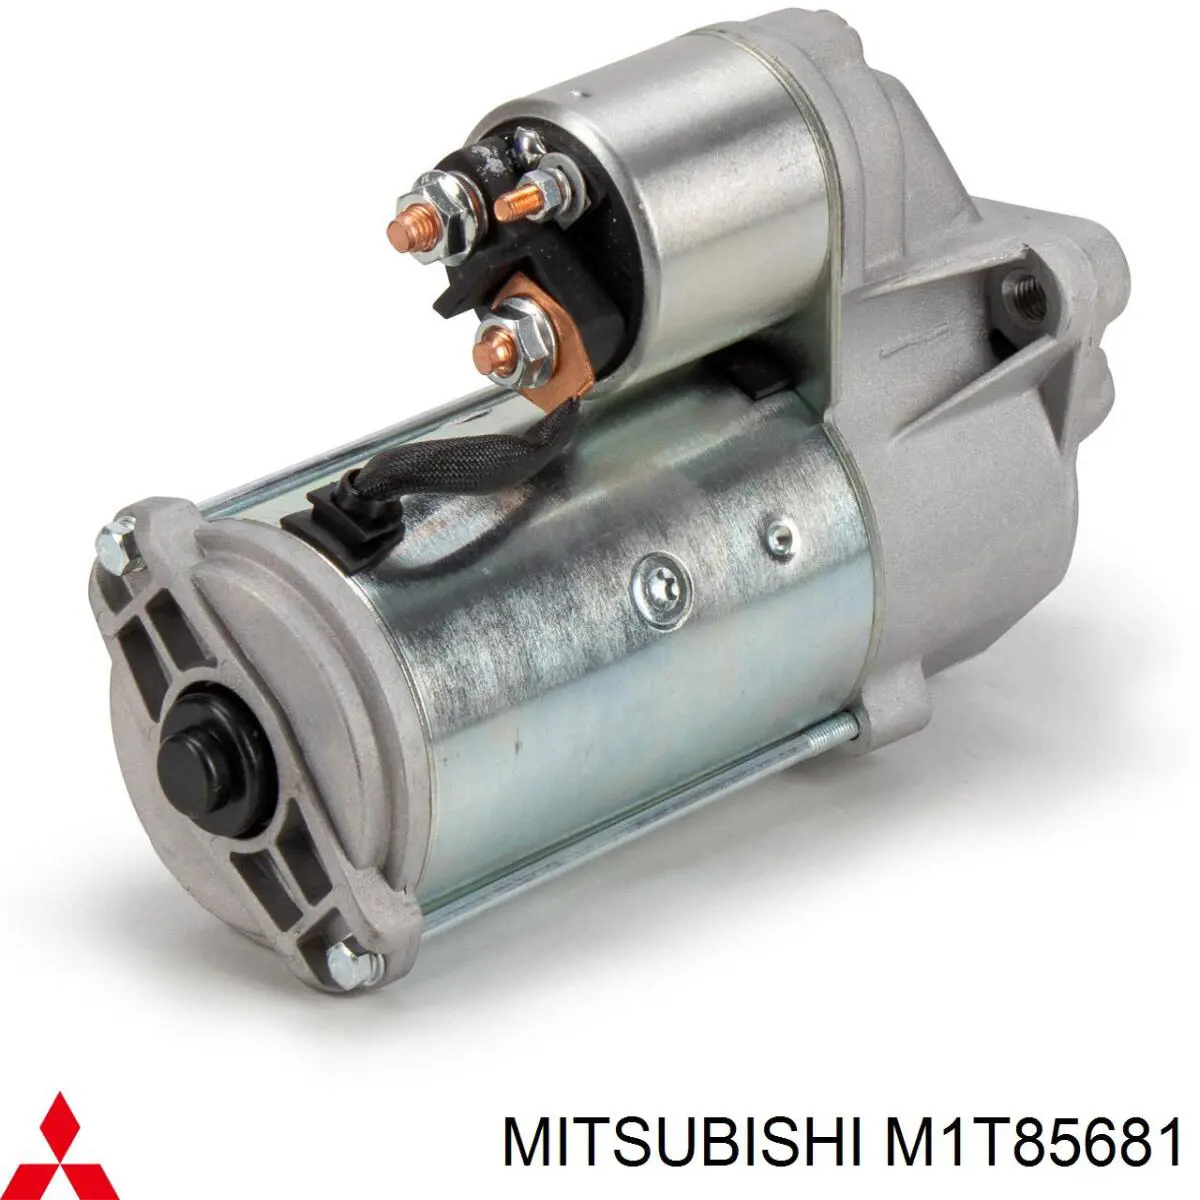 M1T85681 Mitsubishi motor de arranque